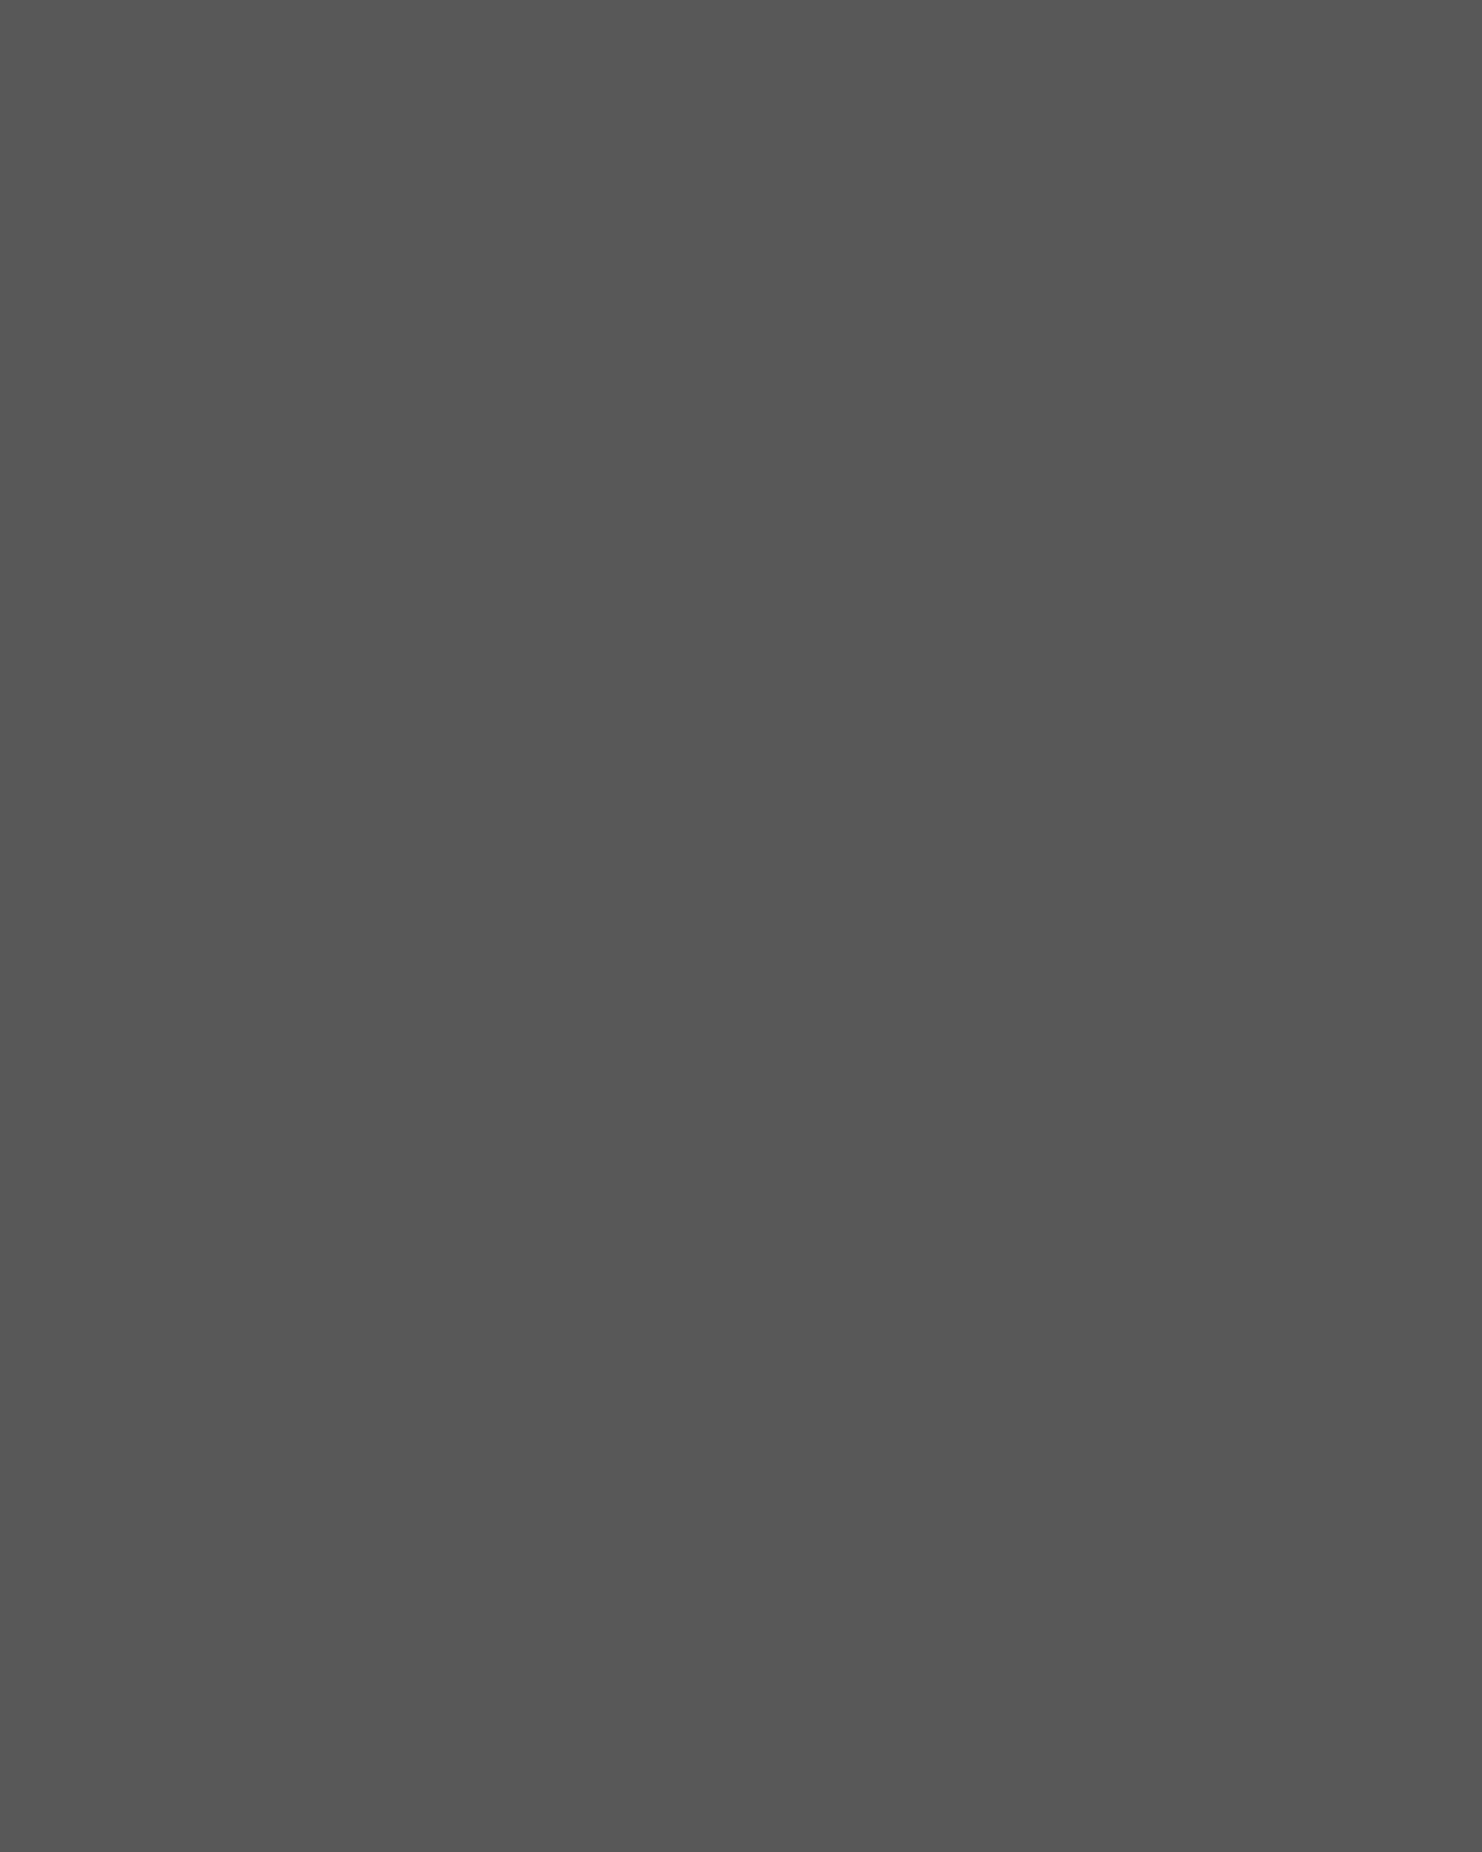 Выставка фотографий Петра Шумова «Русское зарубежье в фотопортретах». Фотография: <a href="https://fest.fnrz.ru/nn2022" target="_blank" rel="noopener">fest.fnrz.ru</a>